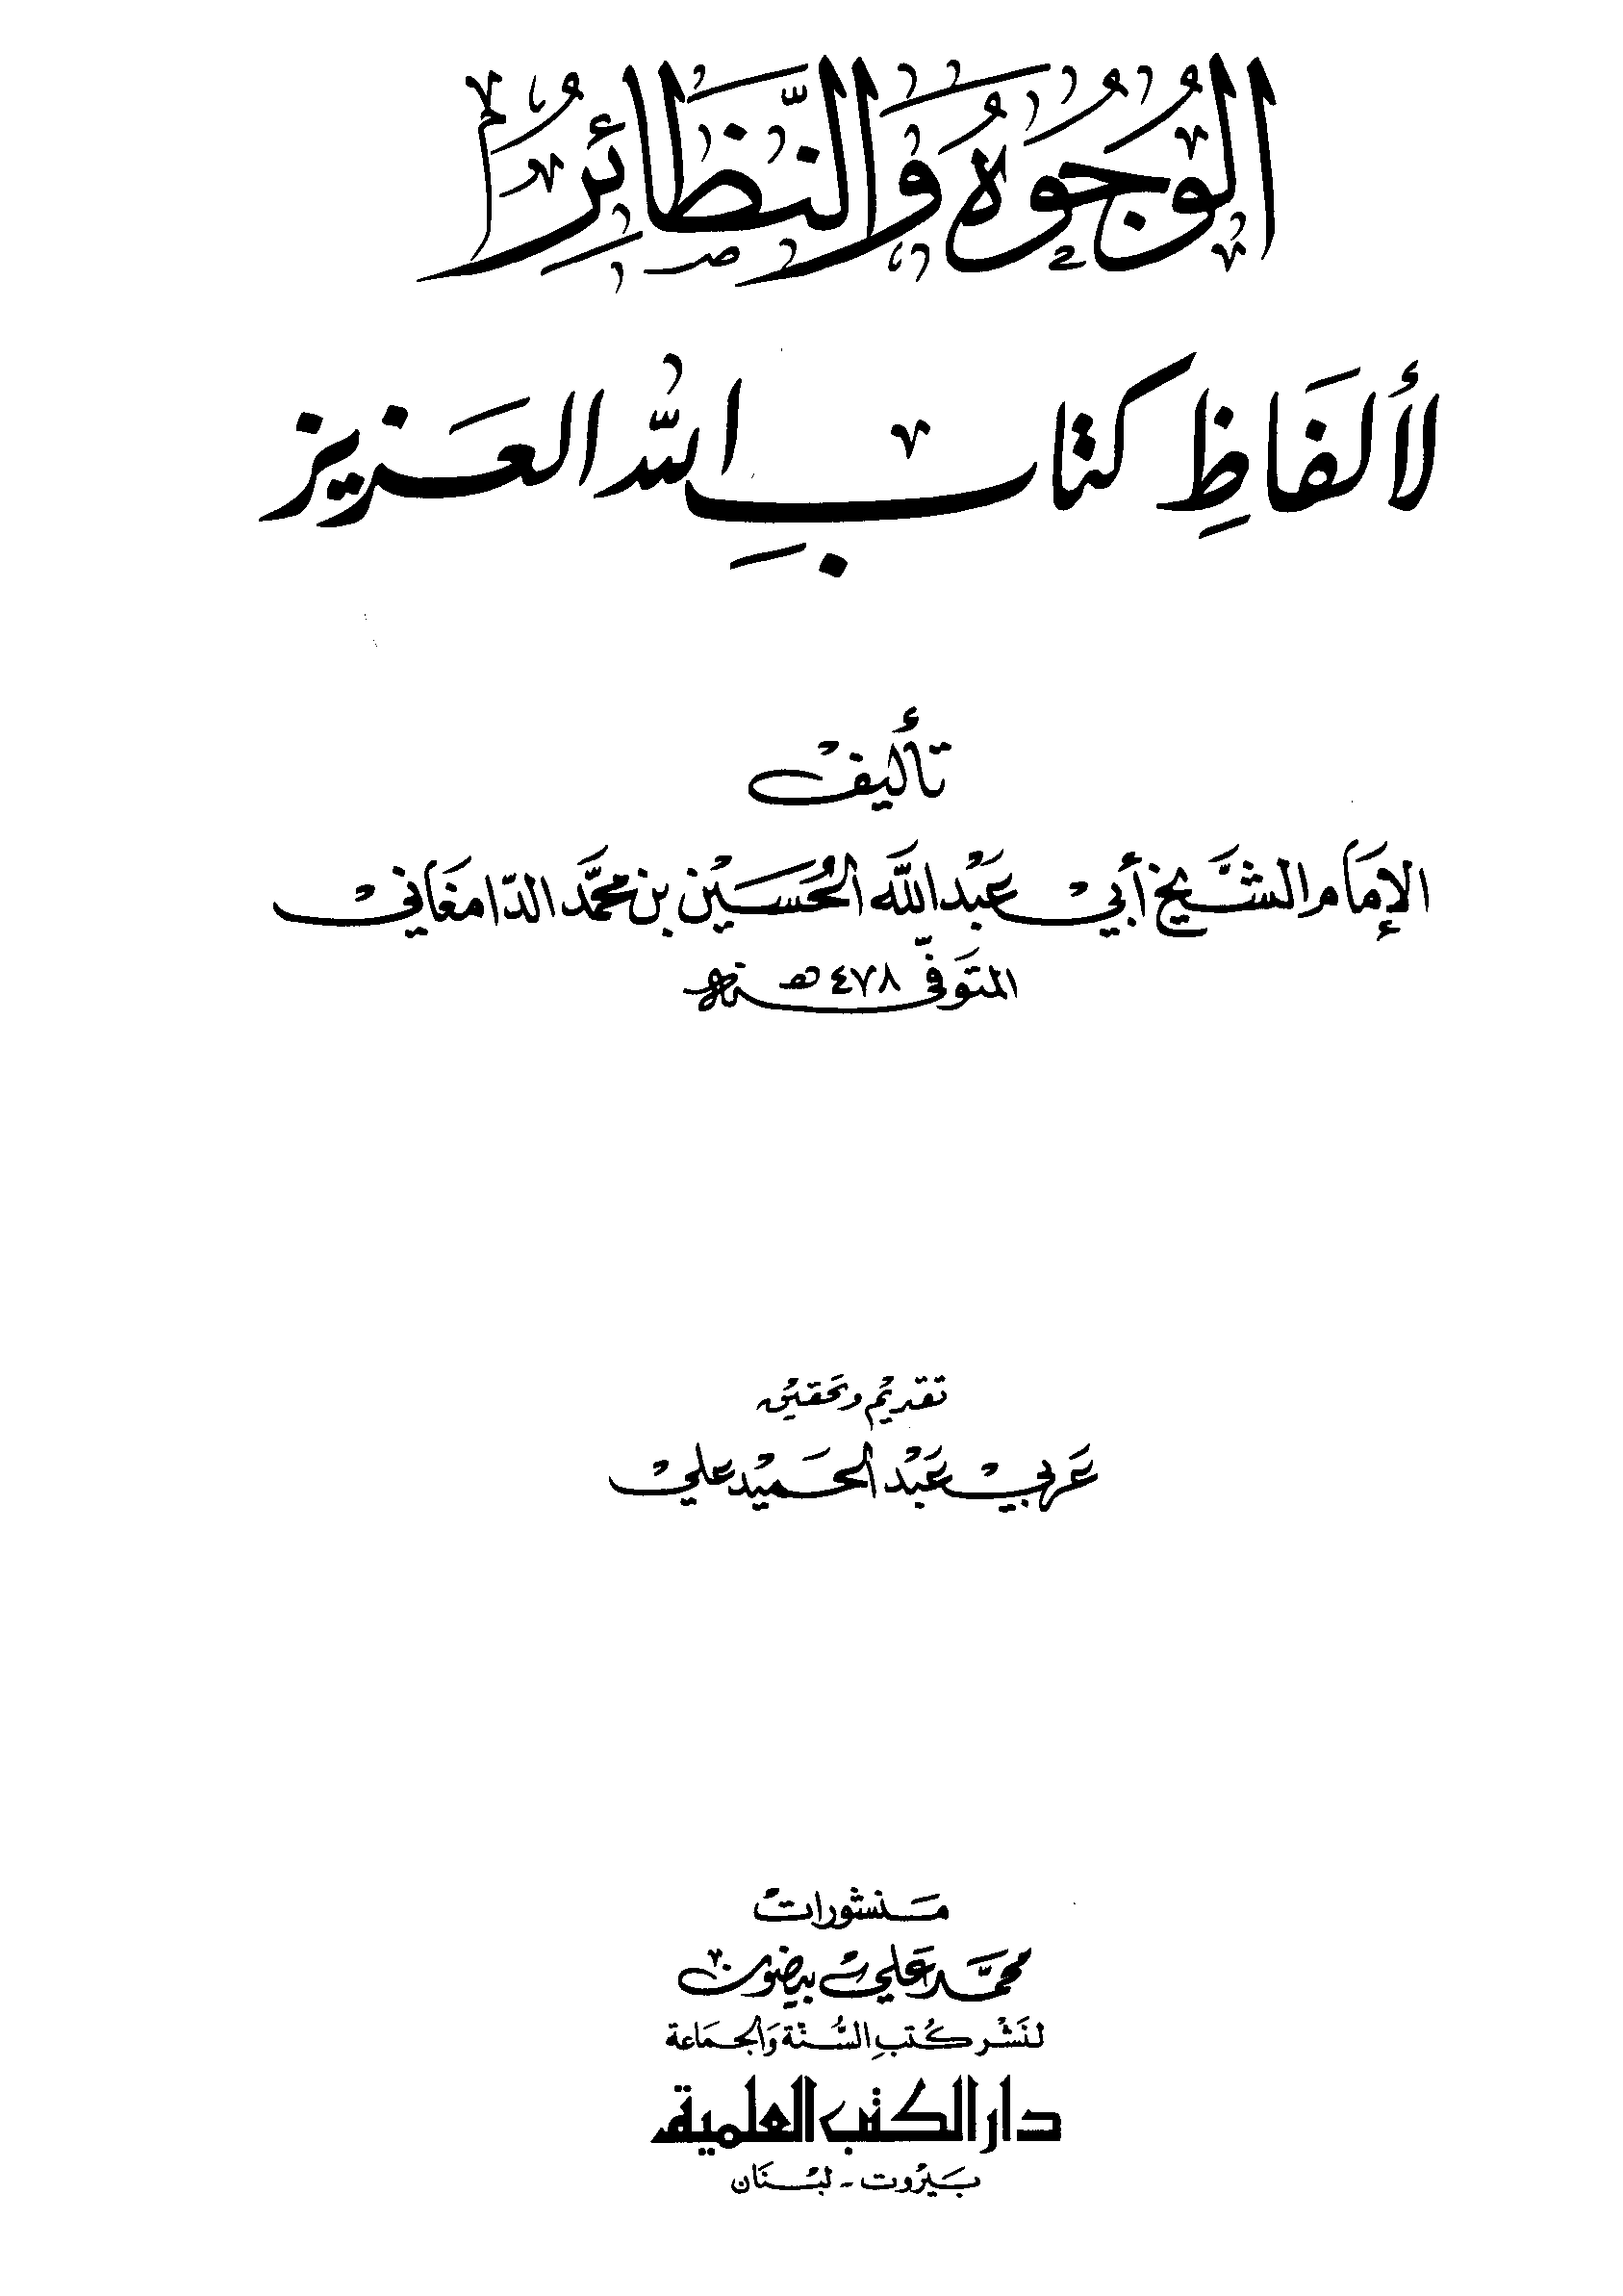 تحميل كتاب الوجوه والنظائر لألفاظ كتاب الله العزيز لـِ: الإمام أبو عبد الله الحسين بن محمد الدامغاني (ت 478)